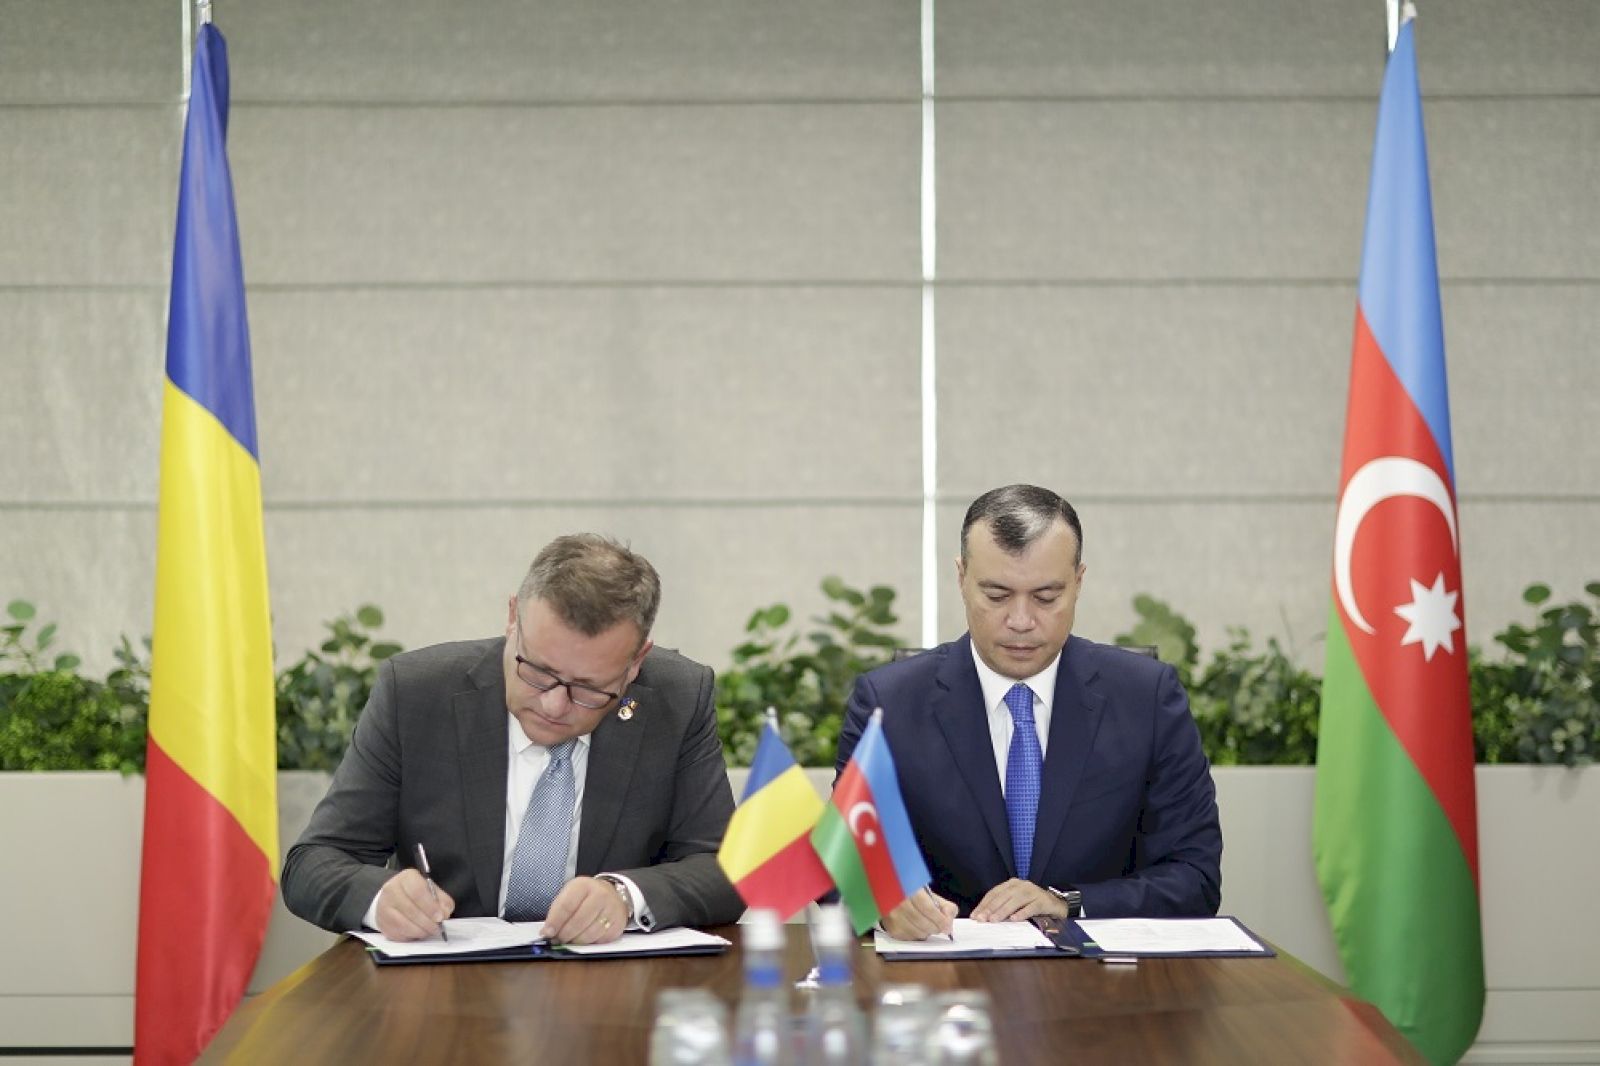 Azerbaidjanul și România semnează un plan de acțiune pentru cooperare în domeniul muncii și protecției sociale [PHOTO]